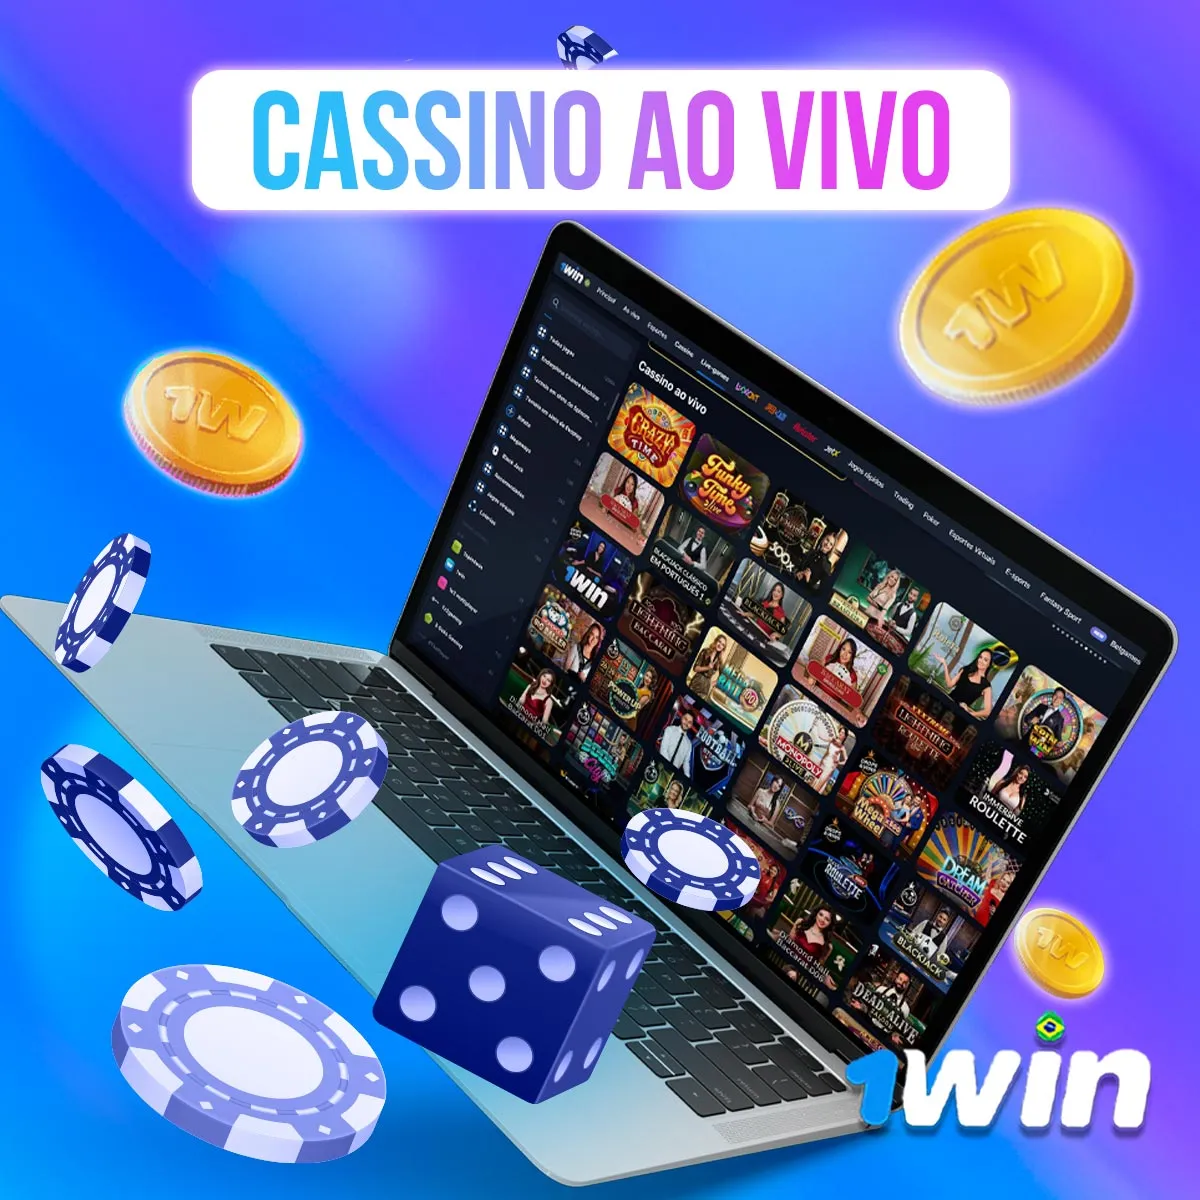 Cassino Ao Vivo na casa de apostas 1win no mercado brasileiro